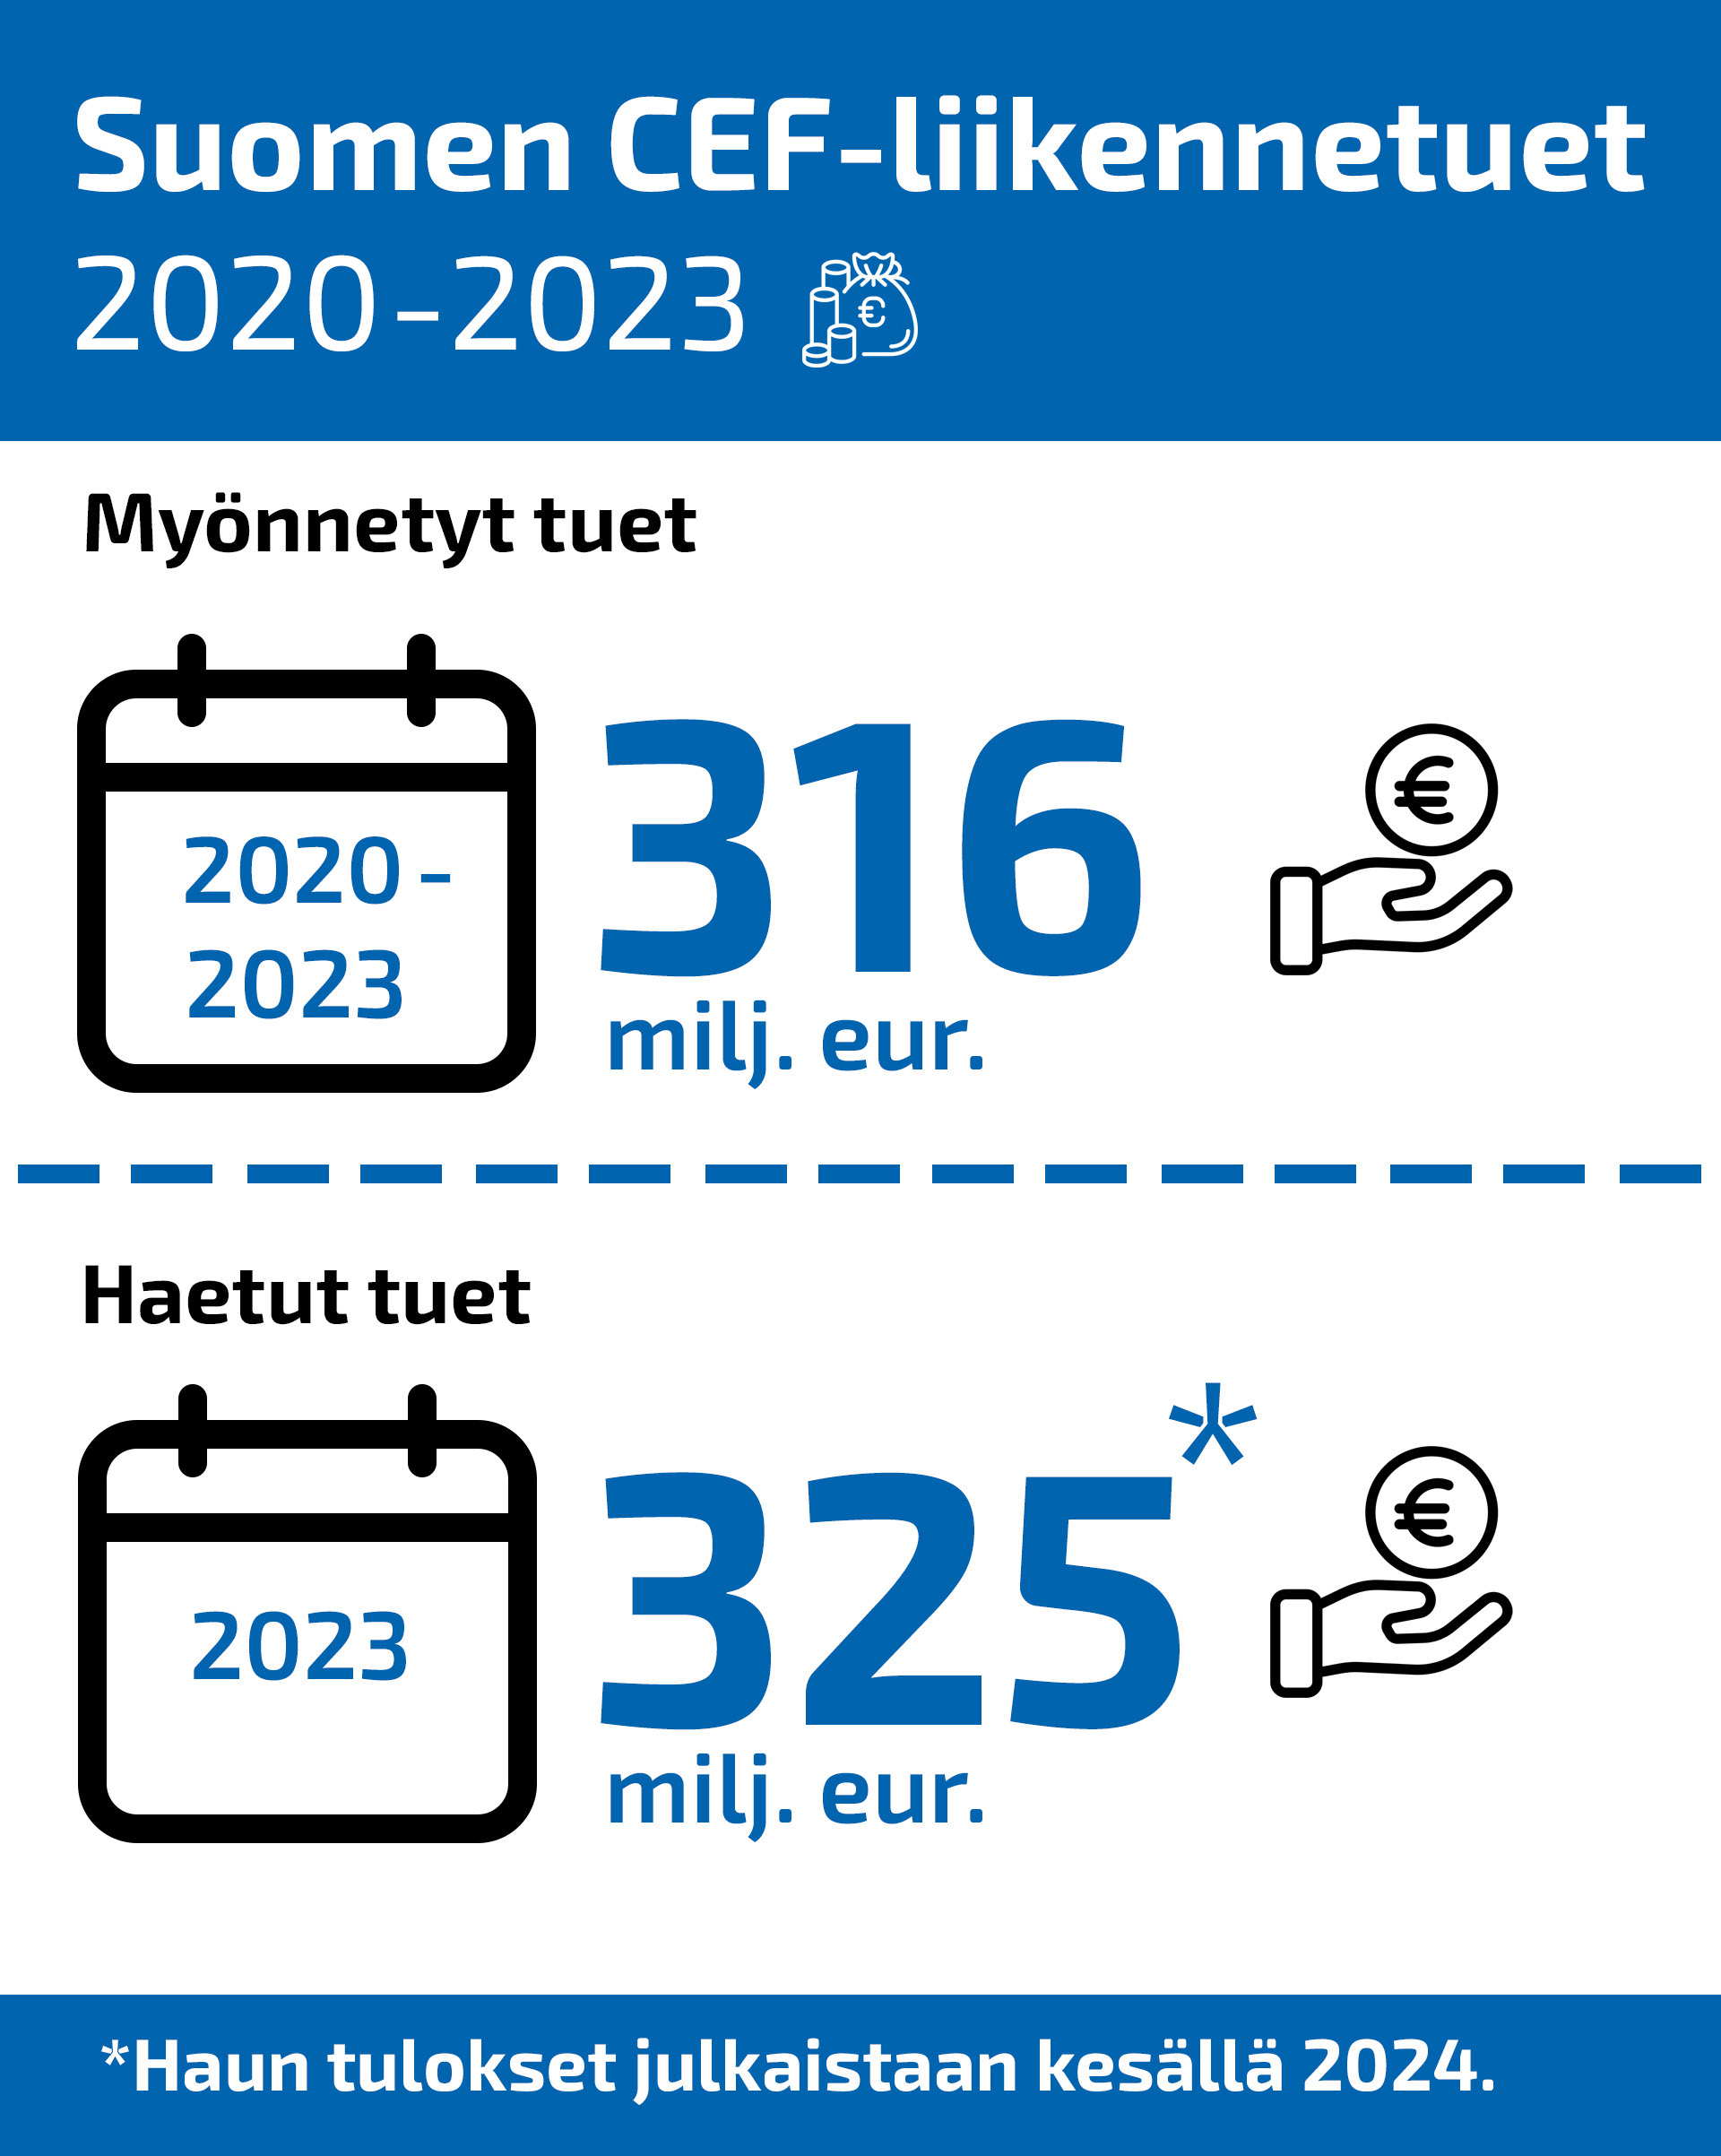 Infografiikka Suomen saamista CEF-liikennetuista vuosina 2020-2023. Suomi on saanut 2020-2023 tukea 316 milj. euroa ja hakenut lisäksi tukea 325 milj. euroa vuoden 2023 haussa, jonka tulokset kerrotaan kesällä 2024.